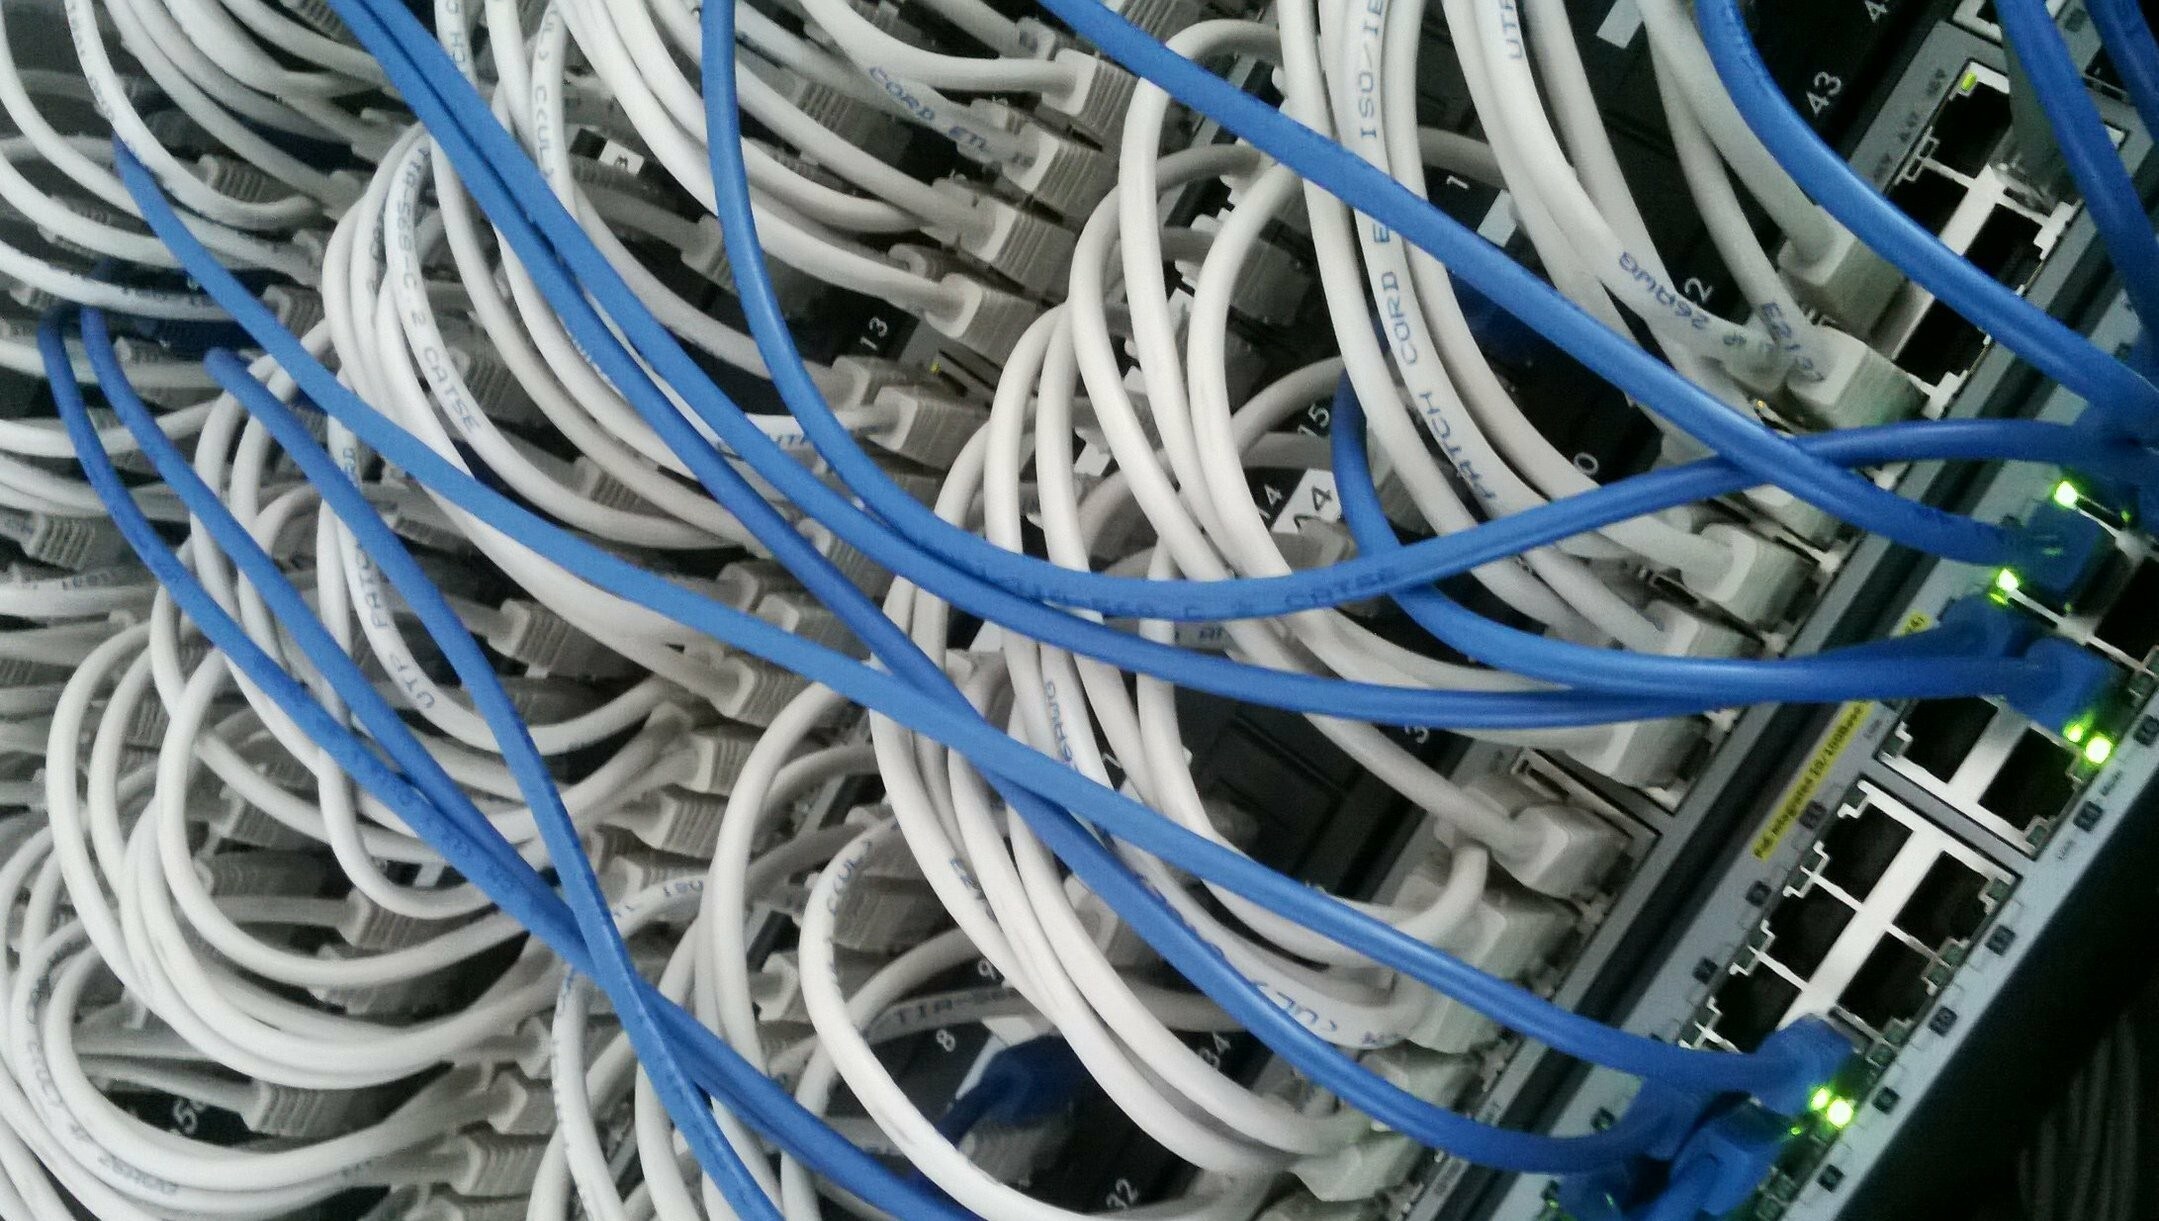 Kabelmanagement Box, Kabel Organizer Box zum Verstecken von Kabeln und